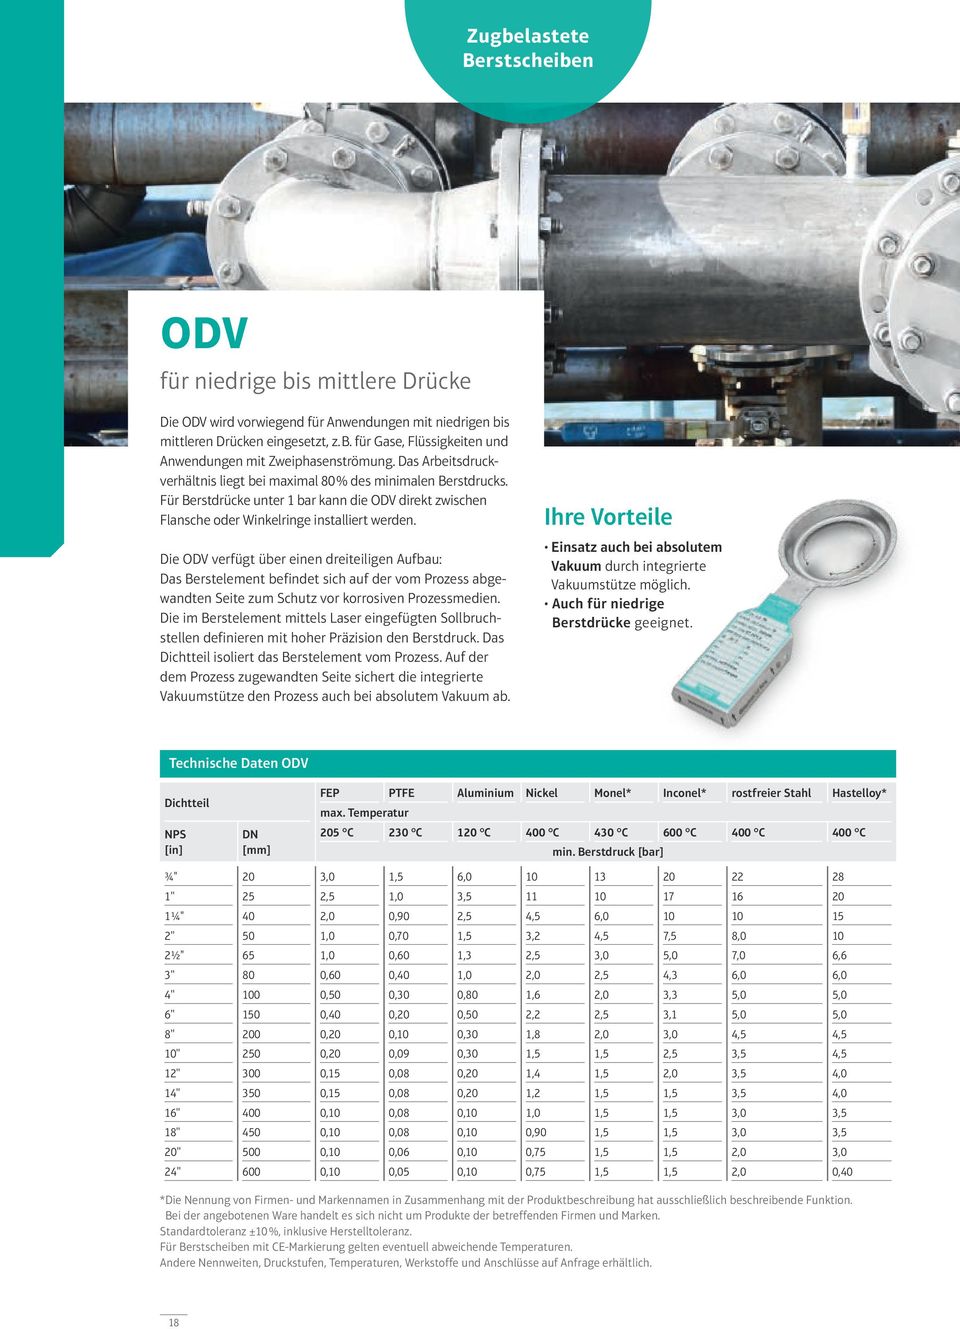 Die ODV verfügt über einen dreiteiligen Aufbau: Das Berstelement befindet sich auf der vom Prozess abgewandten Seite zum Schutz vor korrosiven Prozessmedien.